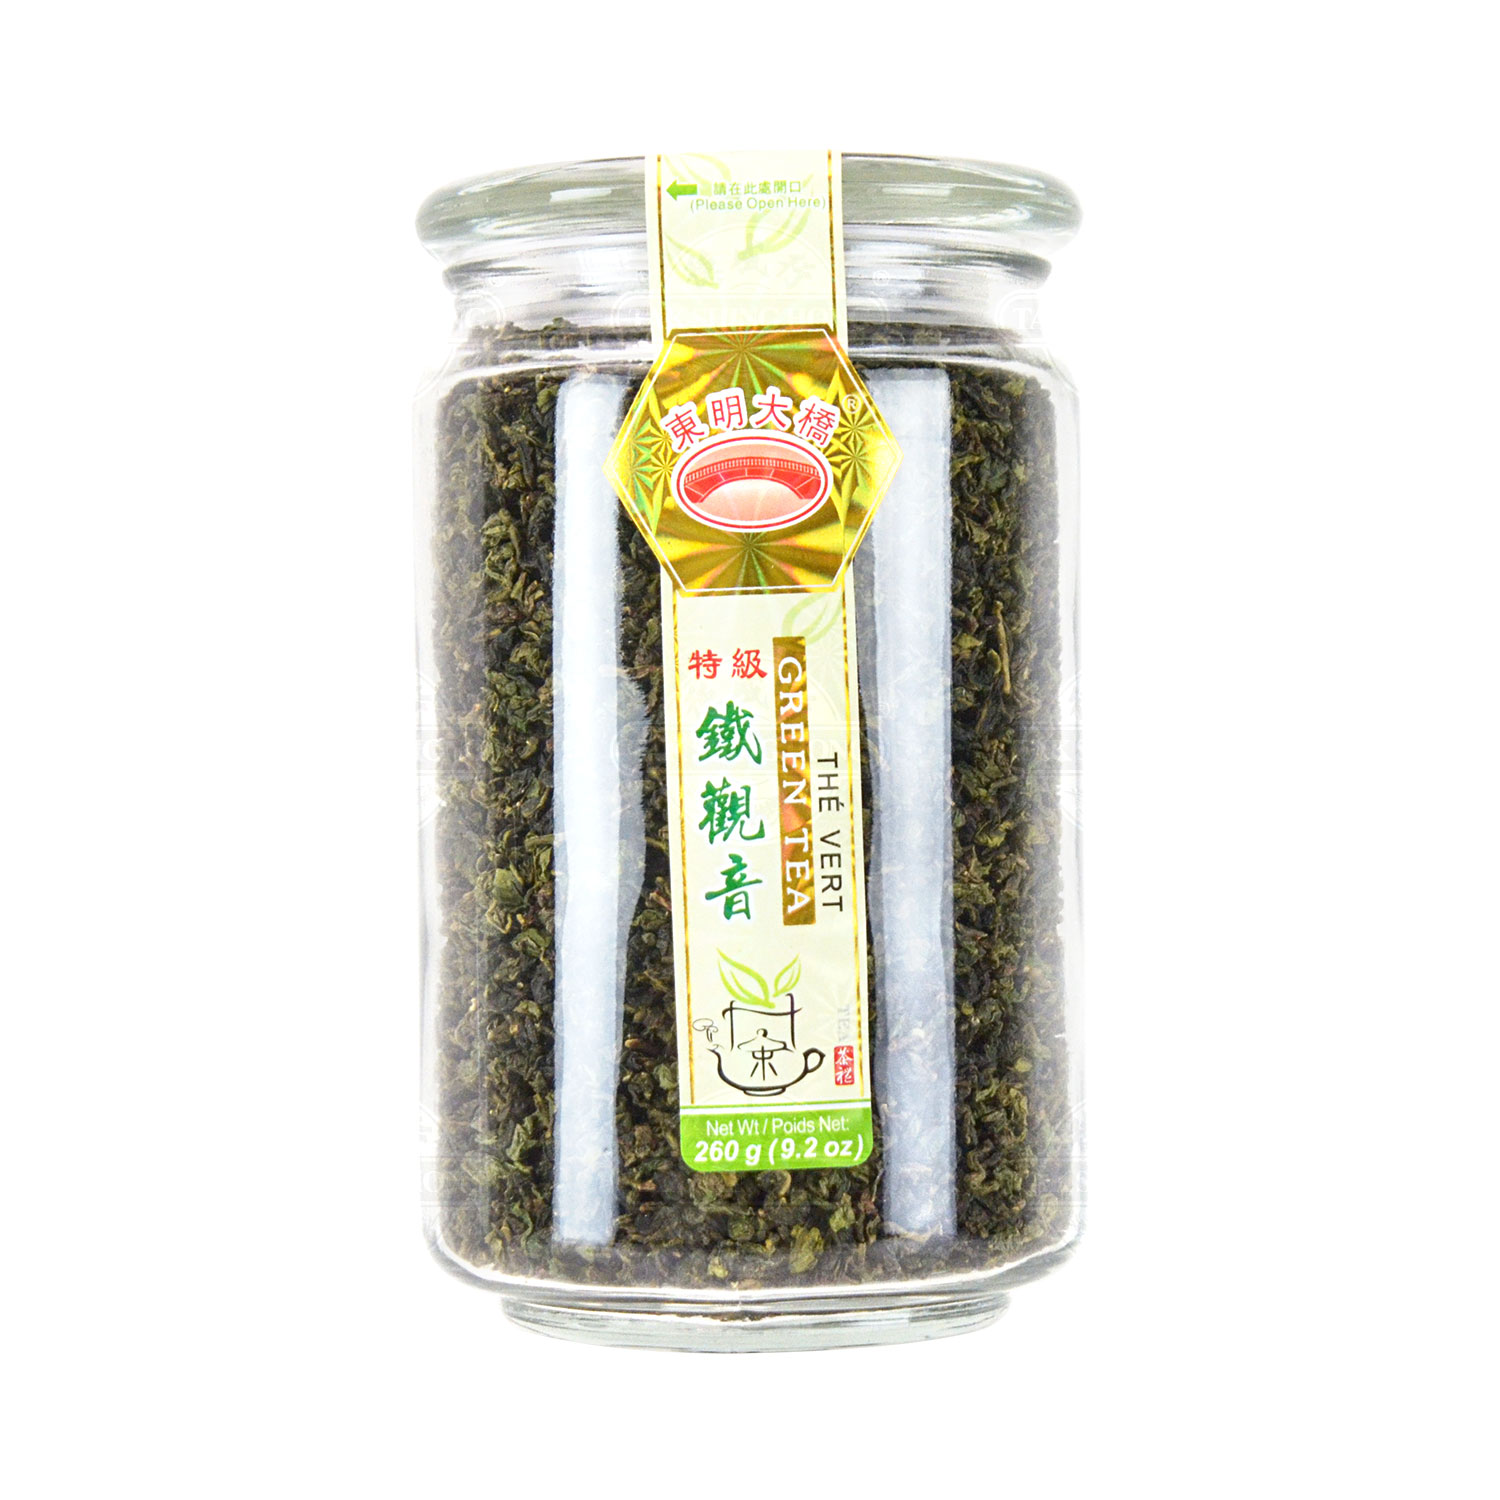 DMDB Tie Guan Yin Green Tea 260g - Tak Shing Hong